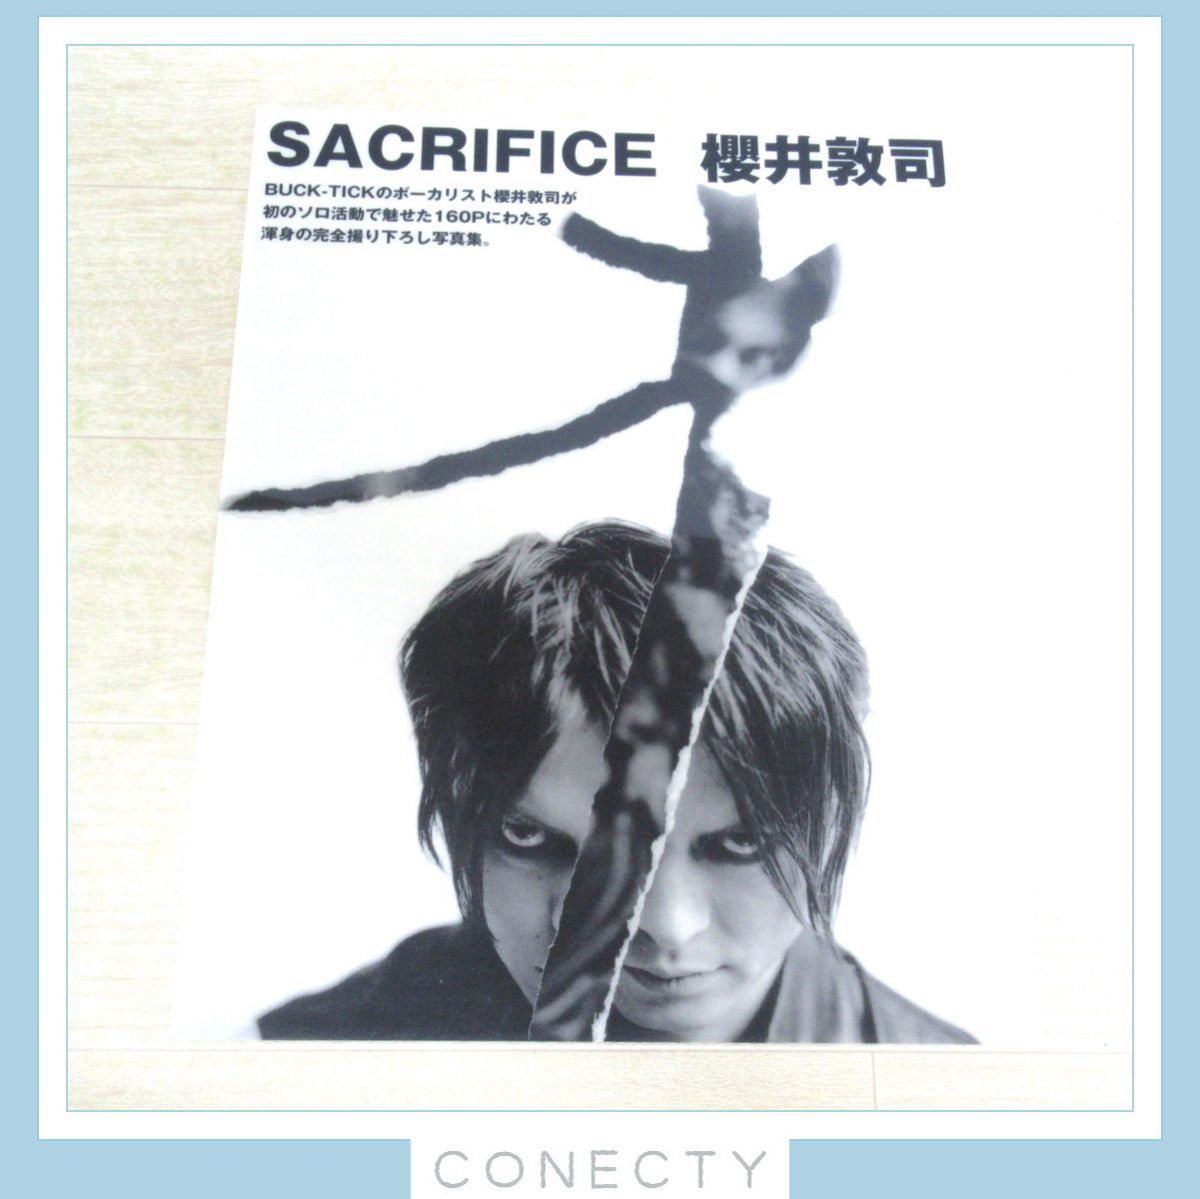 BUCK-TICK 櫻井敦司 写真集「SACRIFICE」2004年 ぴあ-